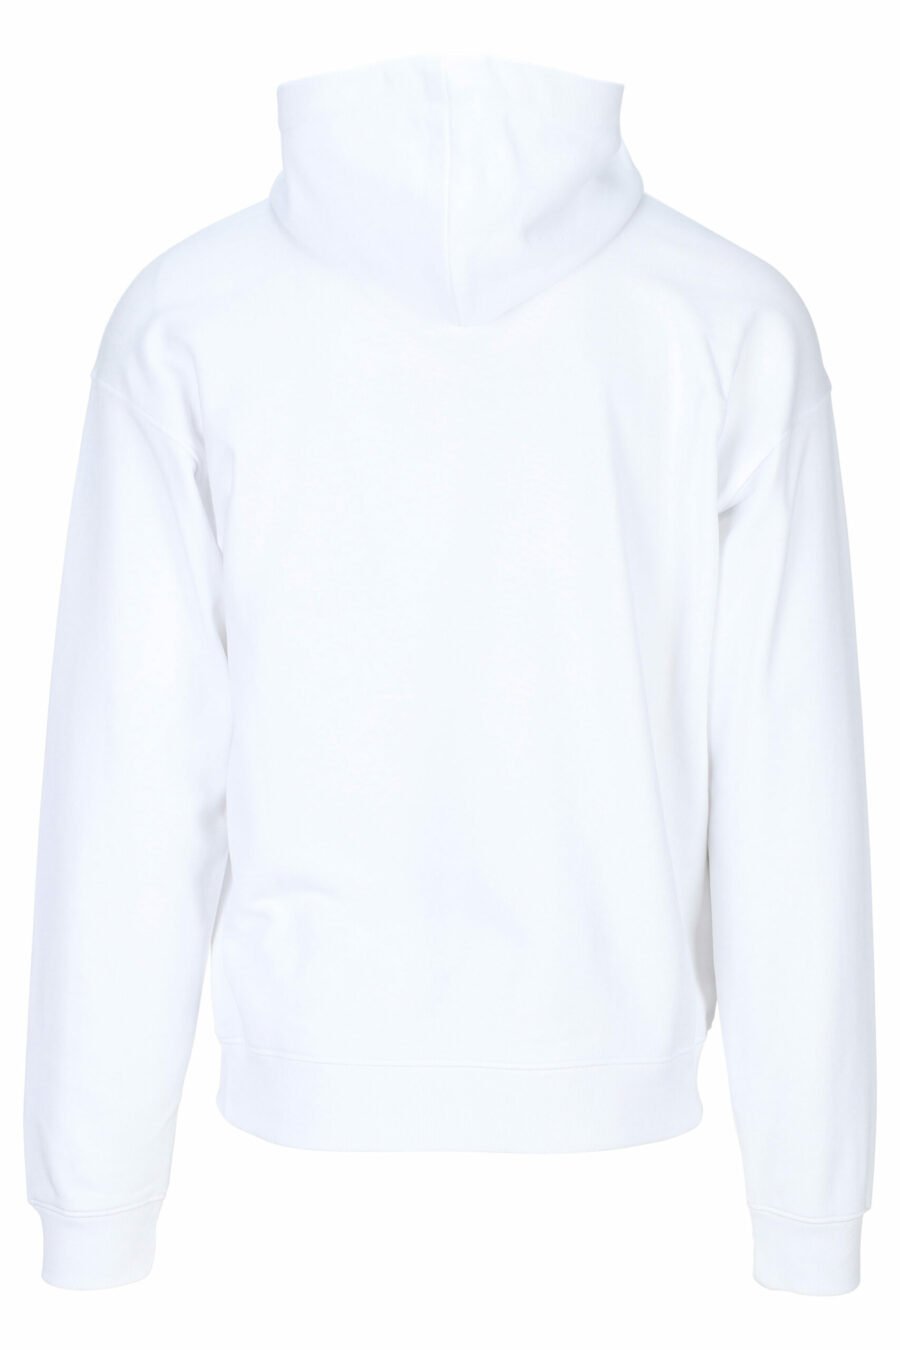 Weißes Sweatshirt mit Kapuze und Maxilogo "teddy" nach Maß - 667113150857 1 skaliert